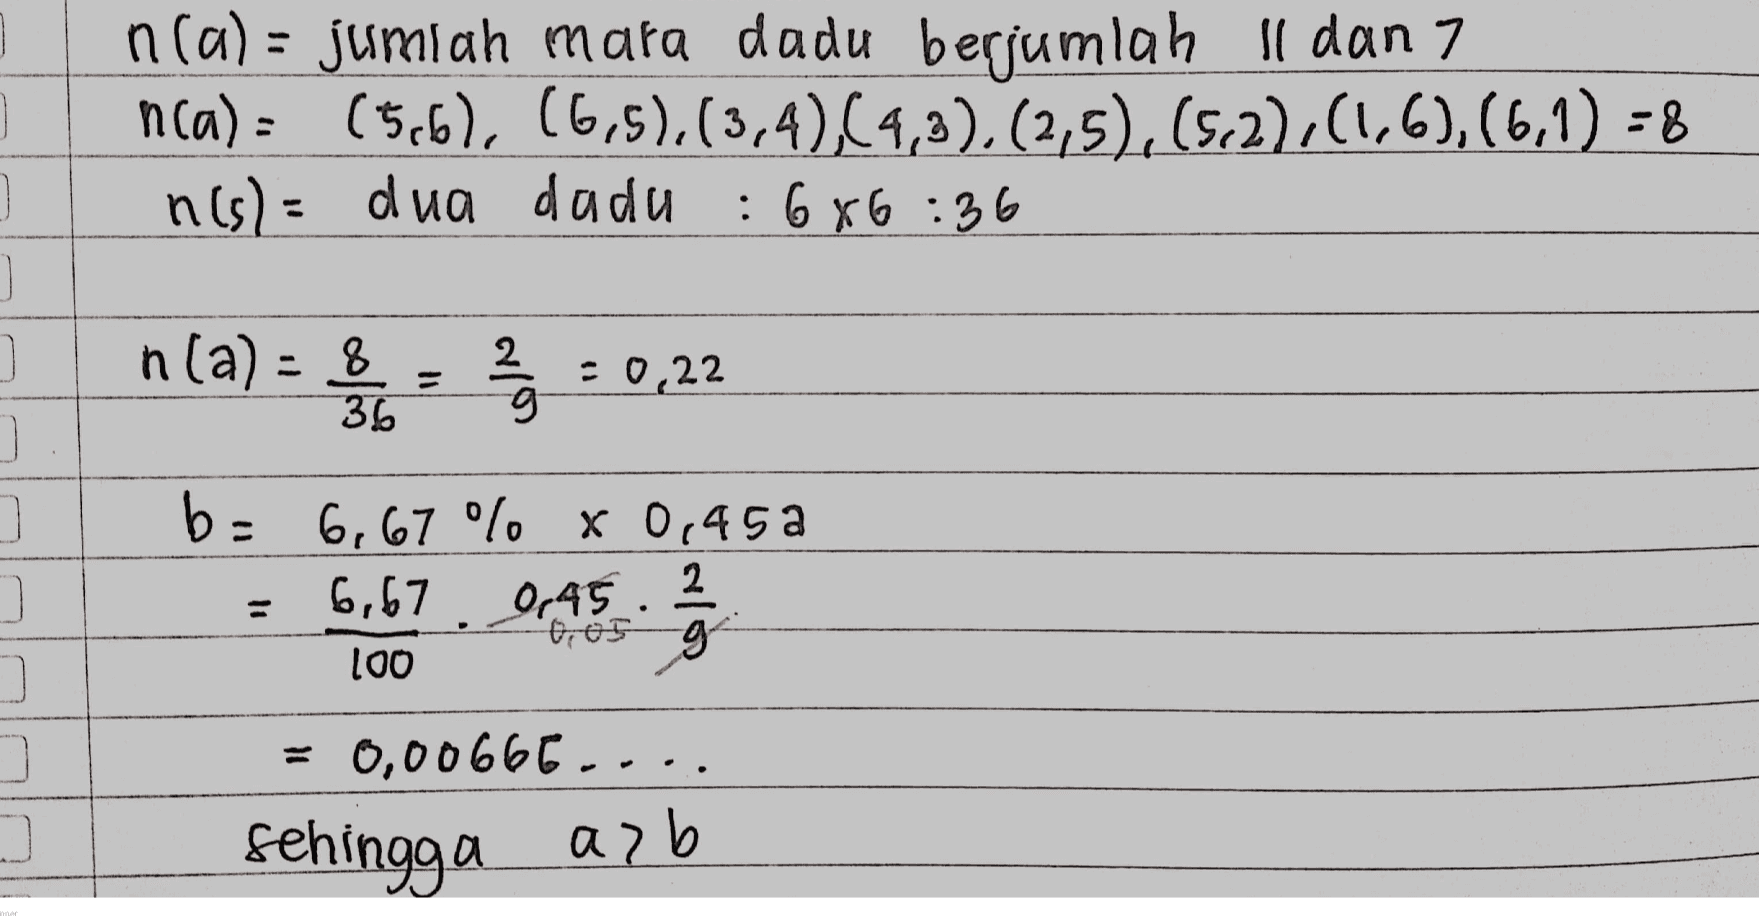 n(a) = jumlah mata dadu berjumlah Il dan 7 n(a)= (5,6), (6,5),(3,4),(4,3),(2,5), (52),(1,6),(6,1) - 8 n(s)= dua dada : 6x6:36 n(a)= 8 2 / 름 2 g : 0,22 36 ] 그 ] ) b= 6,67 % x 0,45 a 2 6,67 0,45 "6,05 g 100 = 0,00666.. sehingga asb 